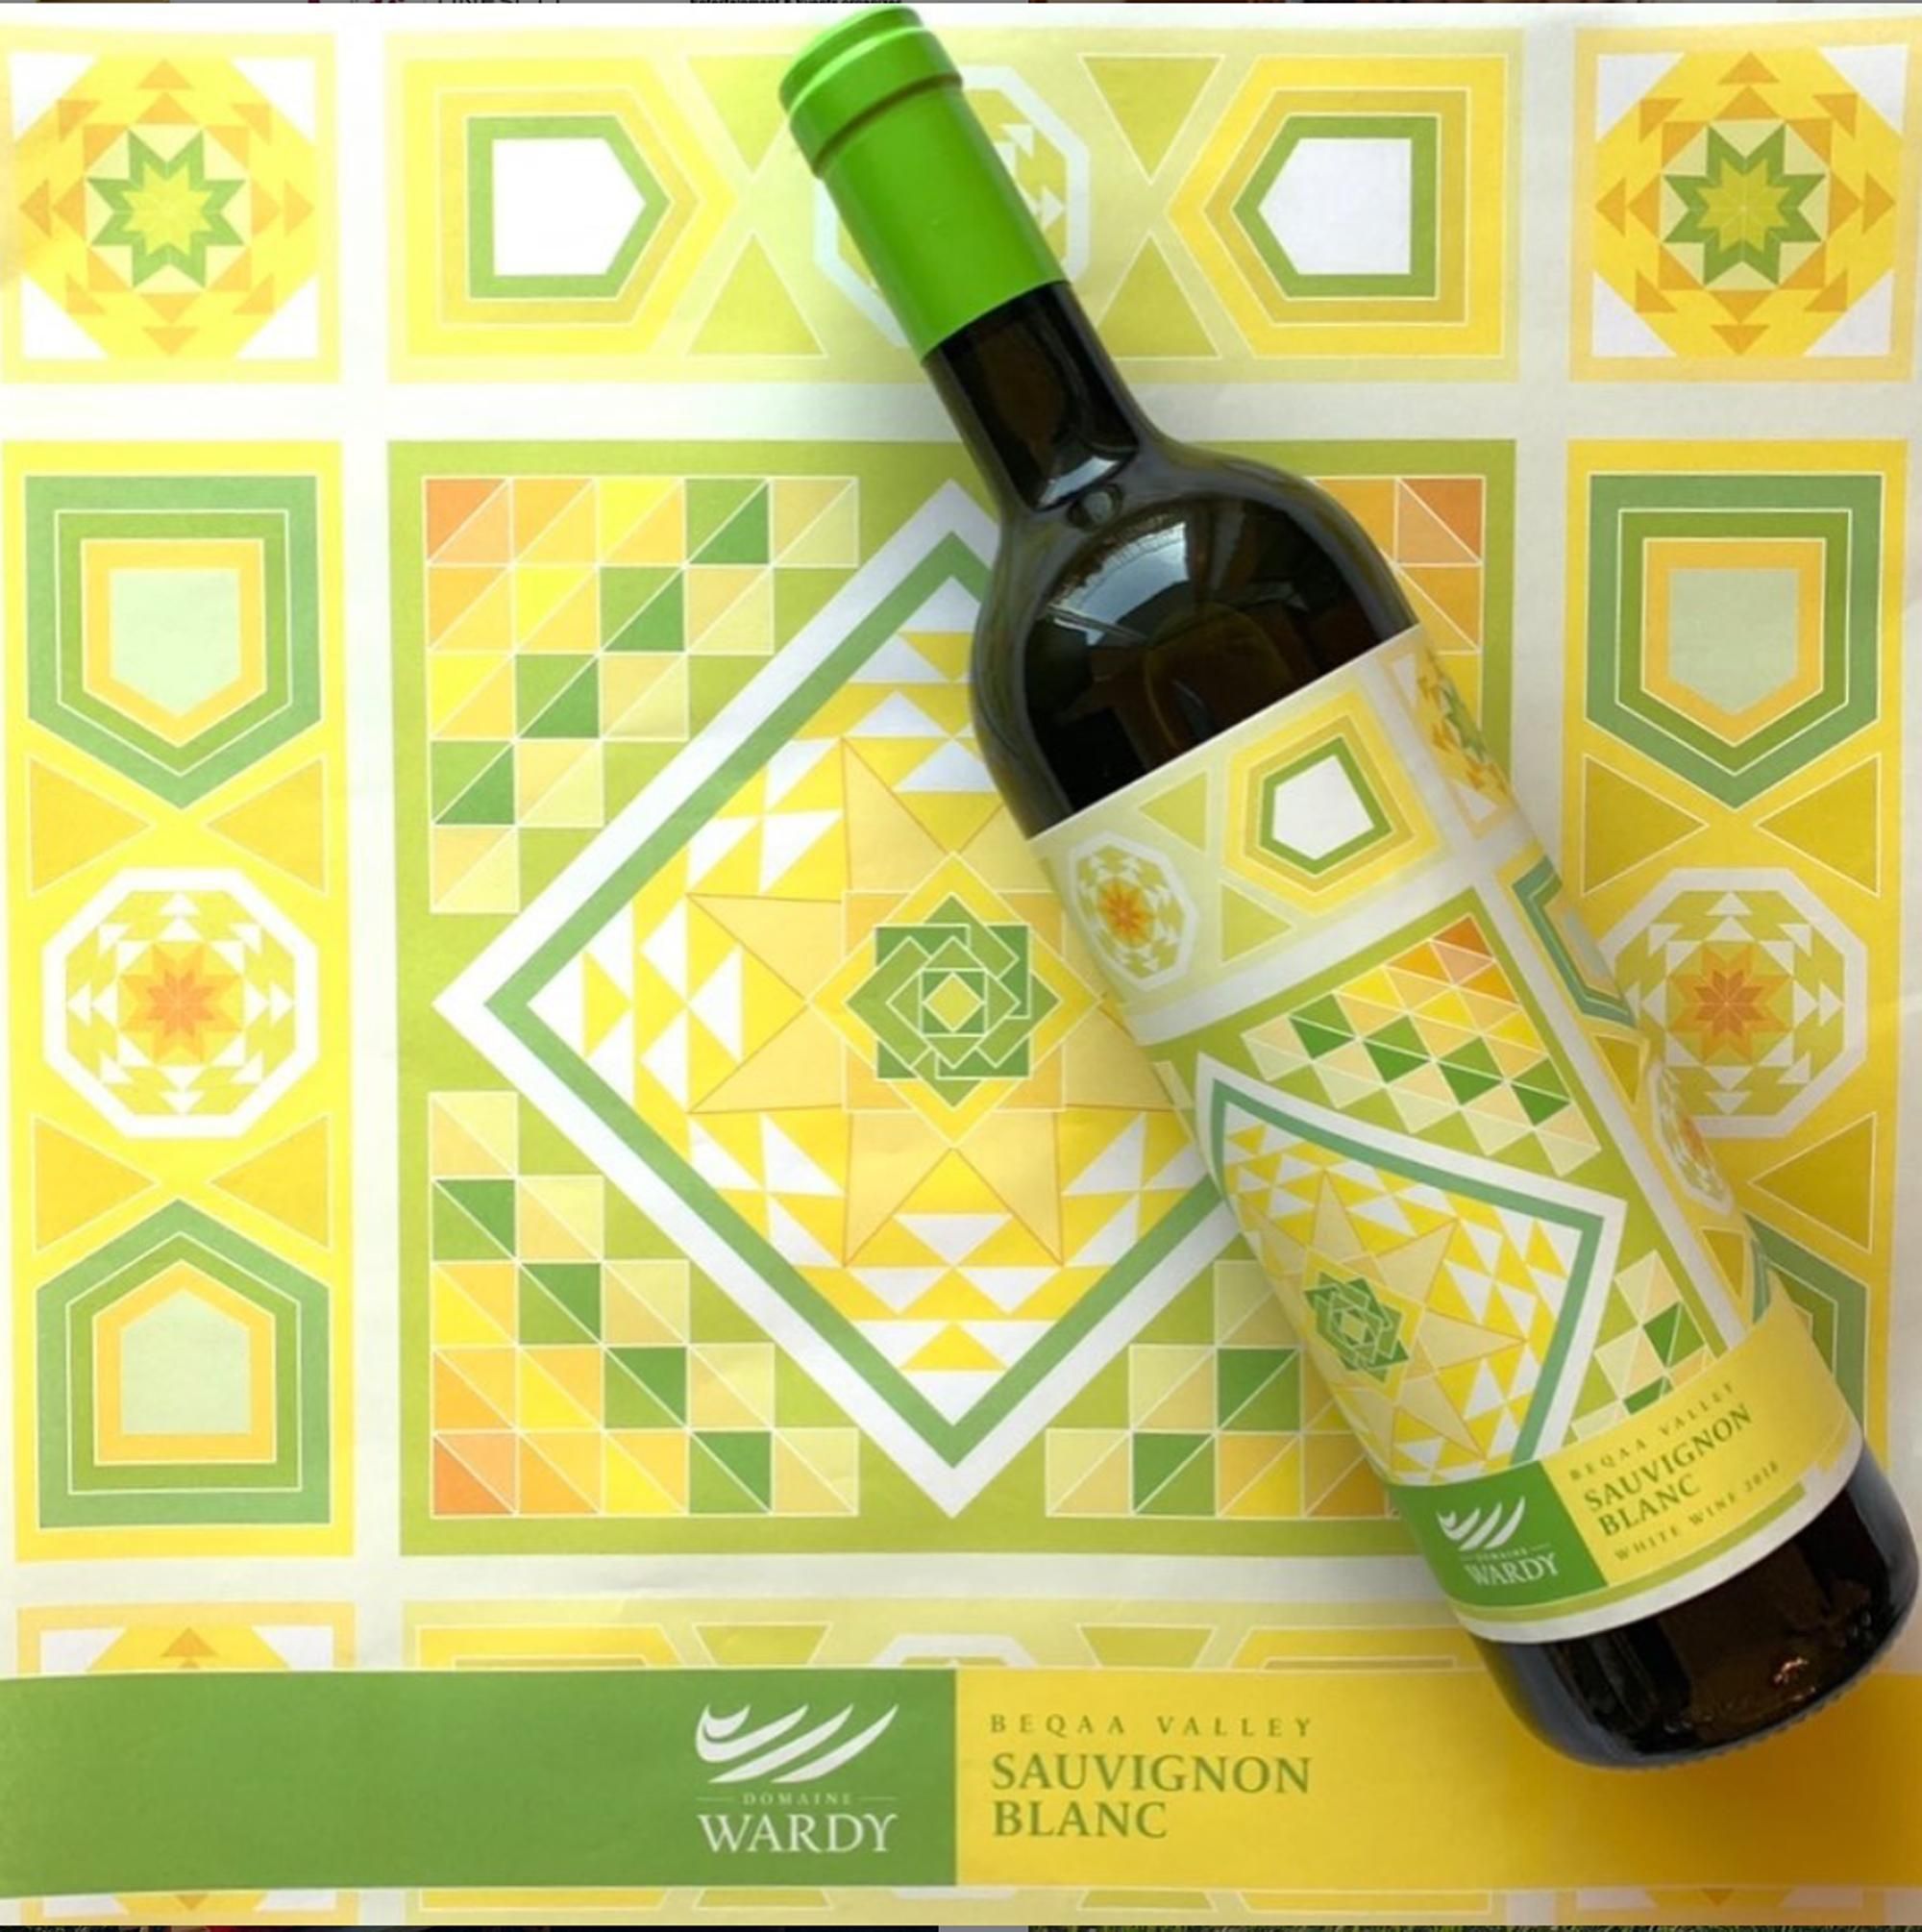 The Sauvignon Blanc design image